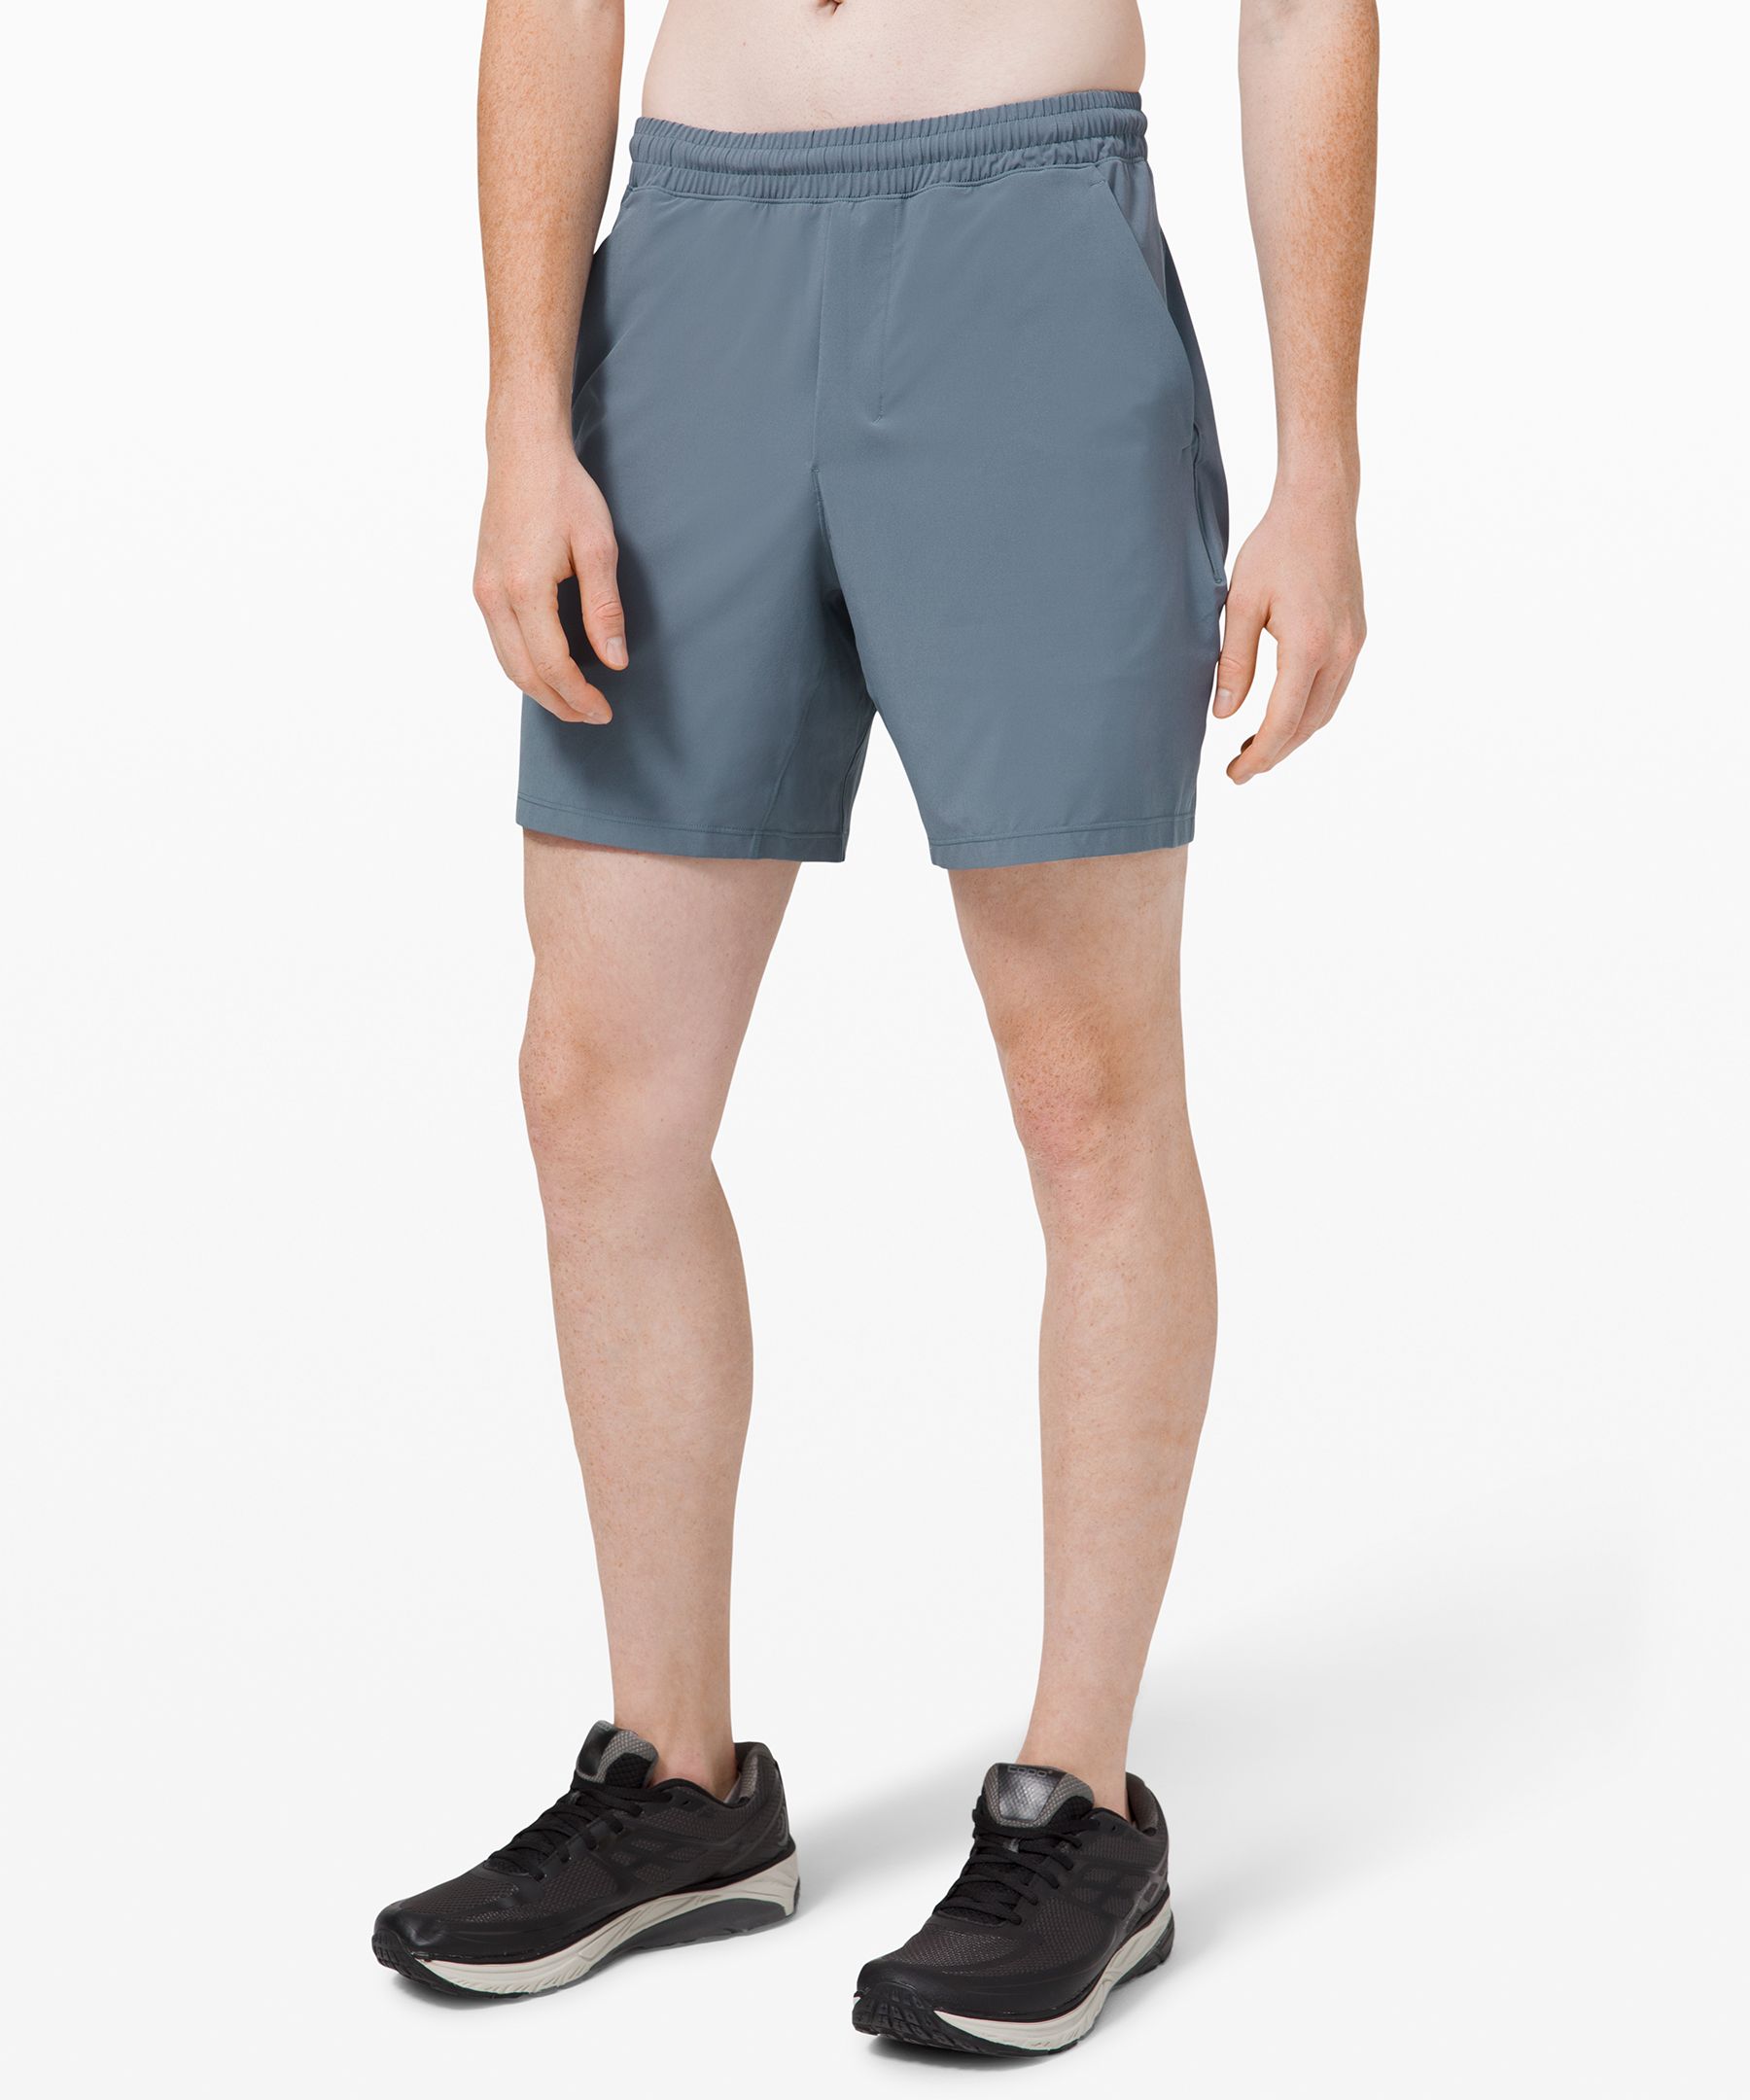 lululemon pace shorts